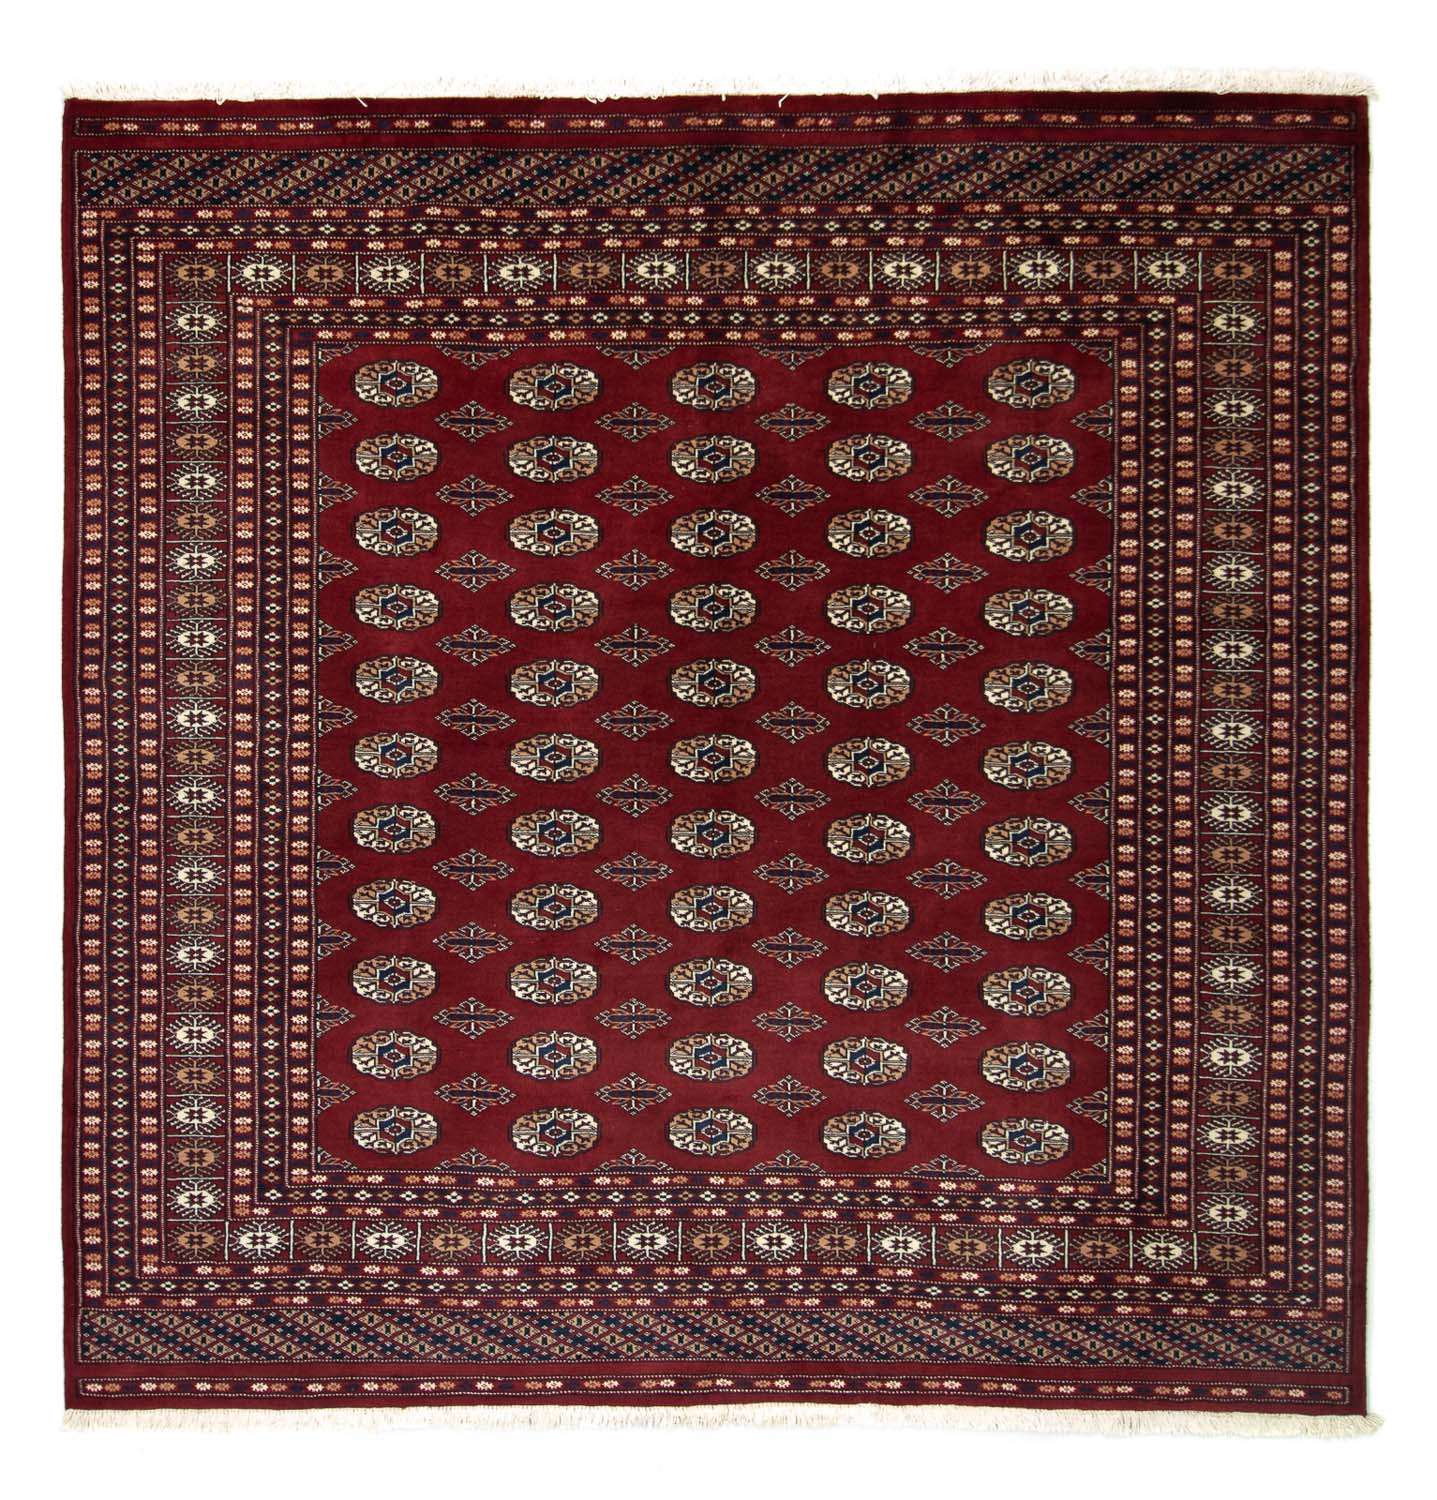 Afghan Rug - Bukhara square  - 203 x 199 cm - red